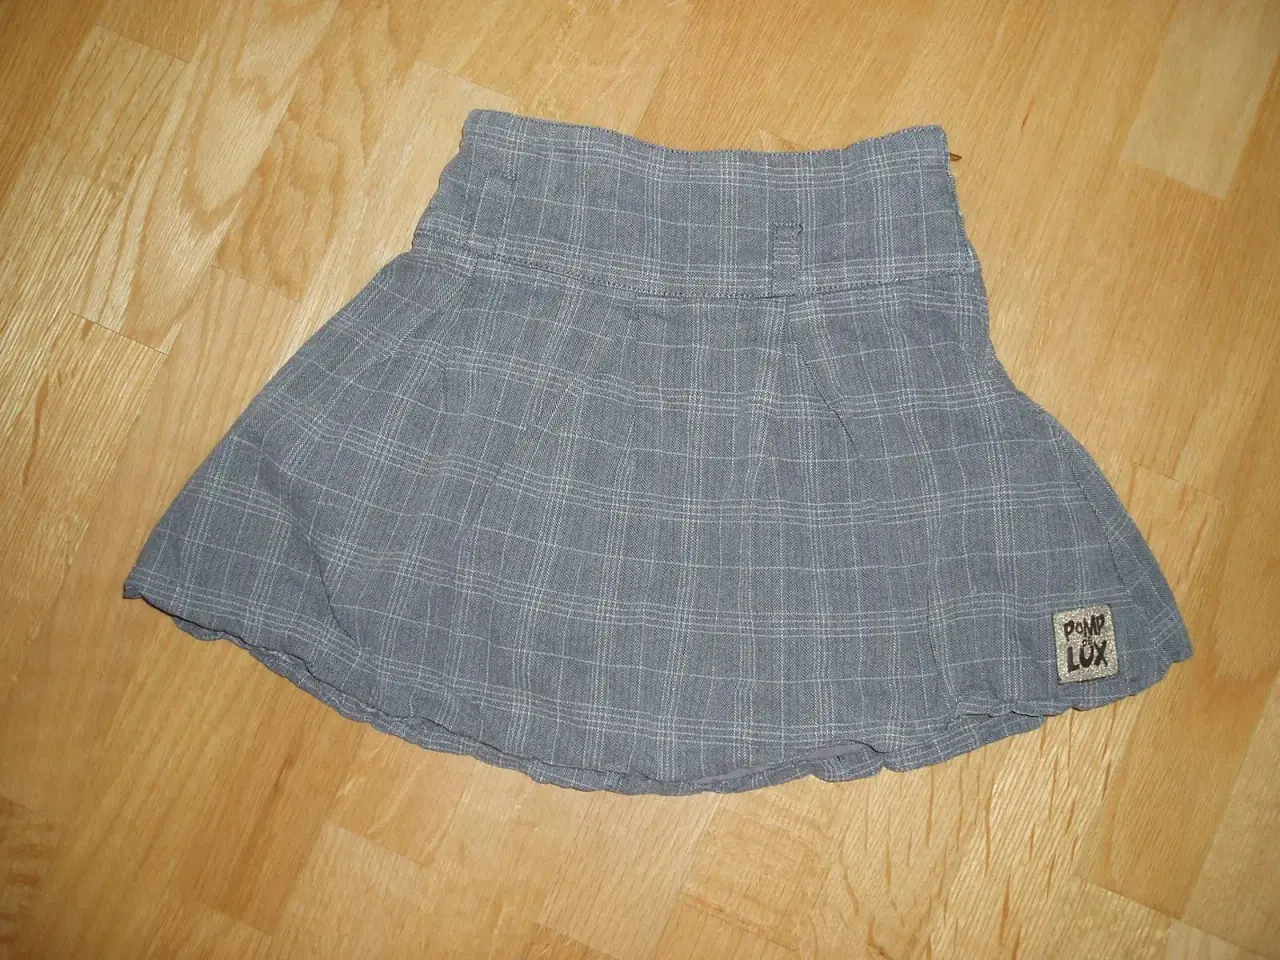 Billede 1 - Pomp de Lux nederdel str. 5-6 år